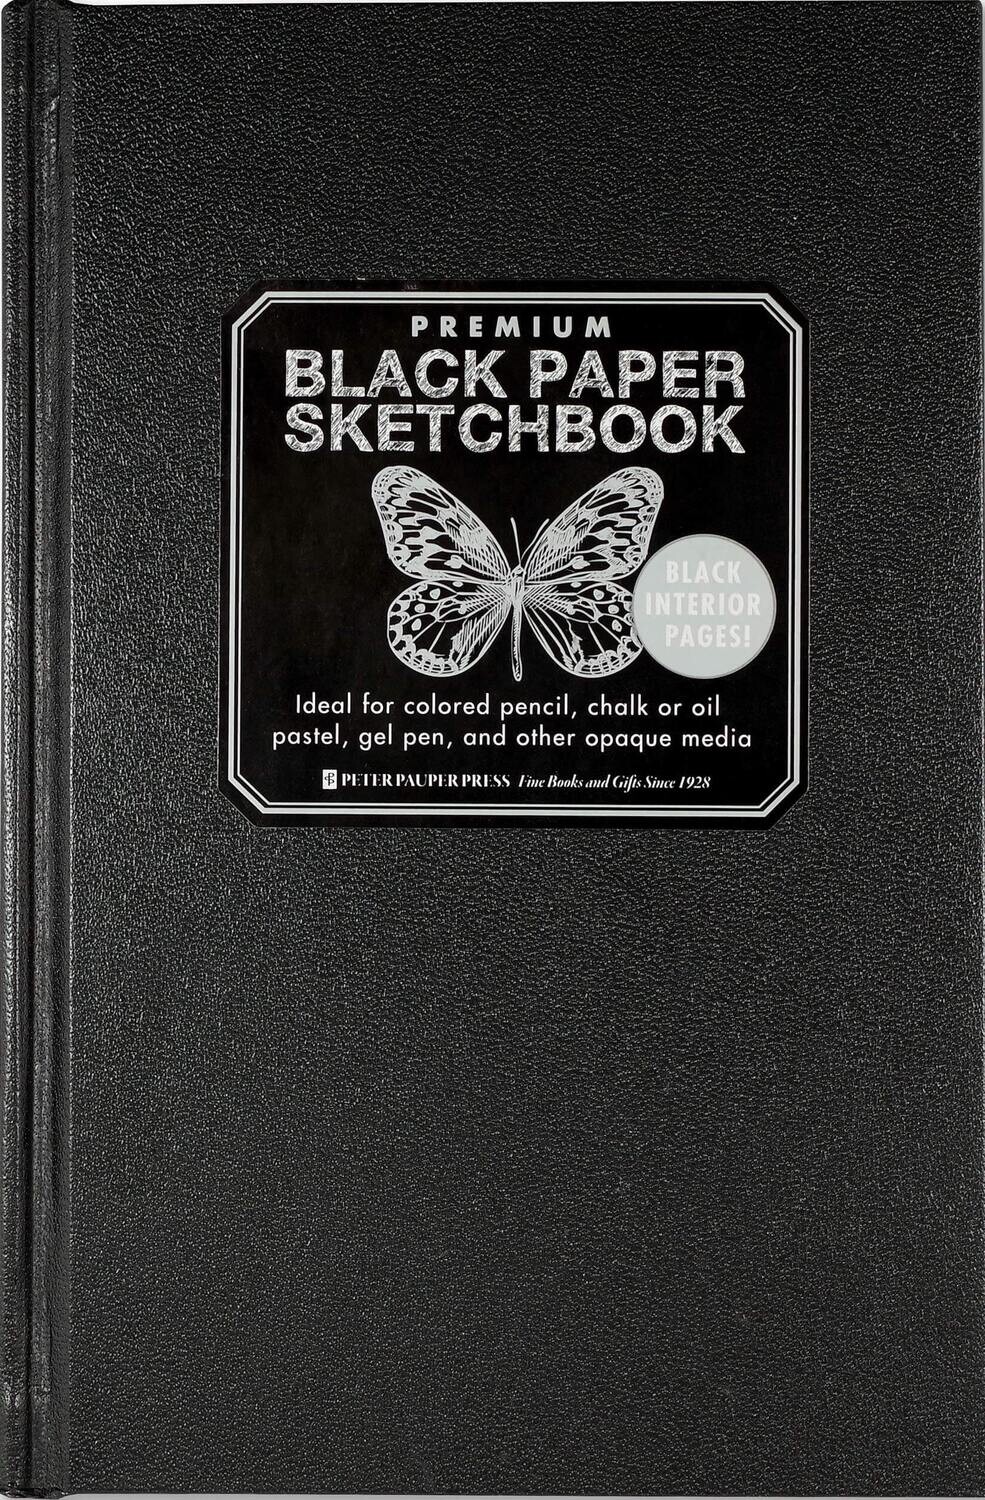 Black Paper Sketchbook HC